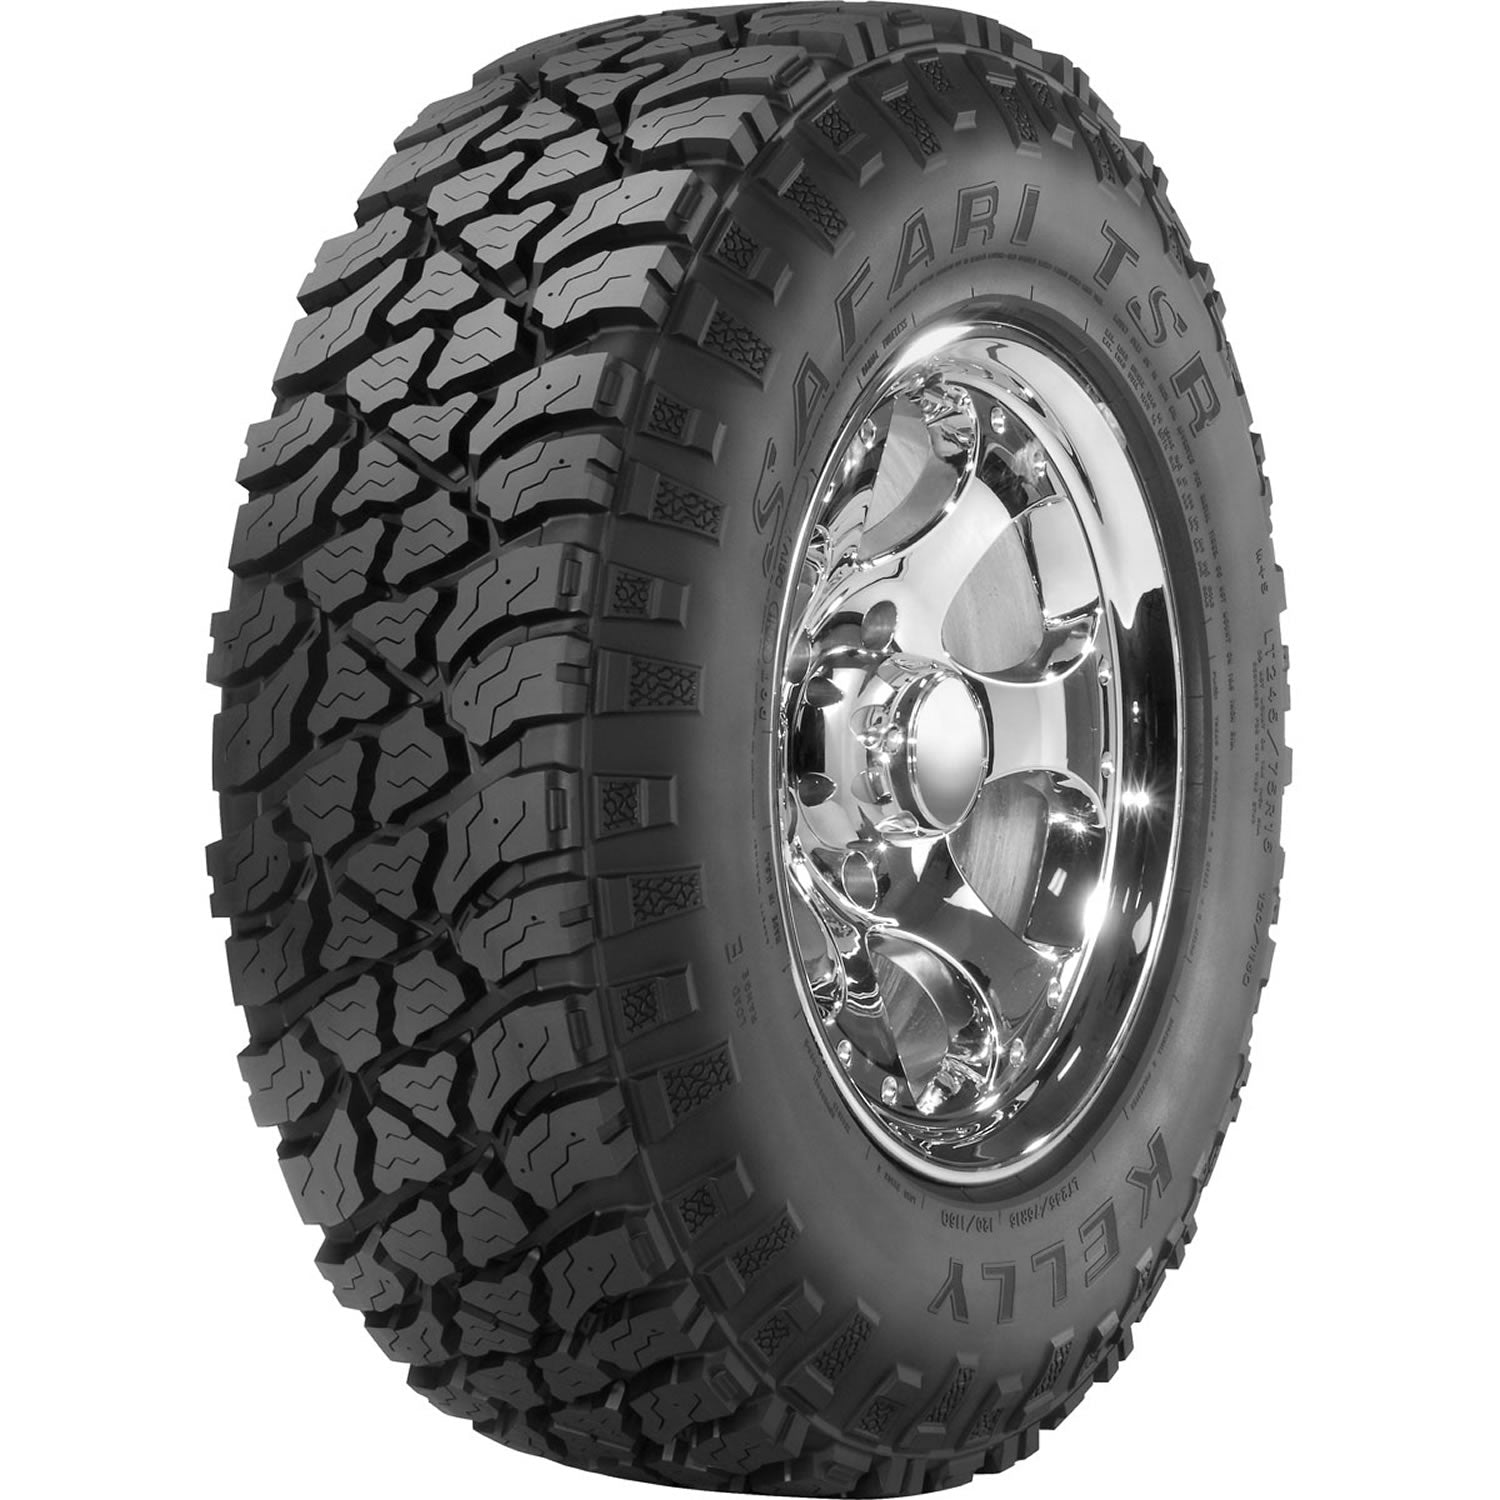 KELLY SAFARI TSR LT245/75R16 (30.7X9.8R 16) Tires